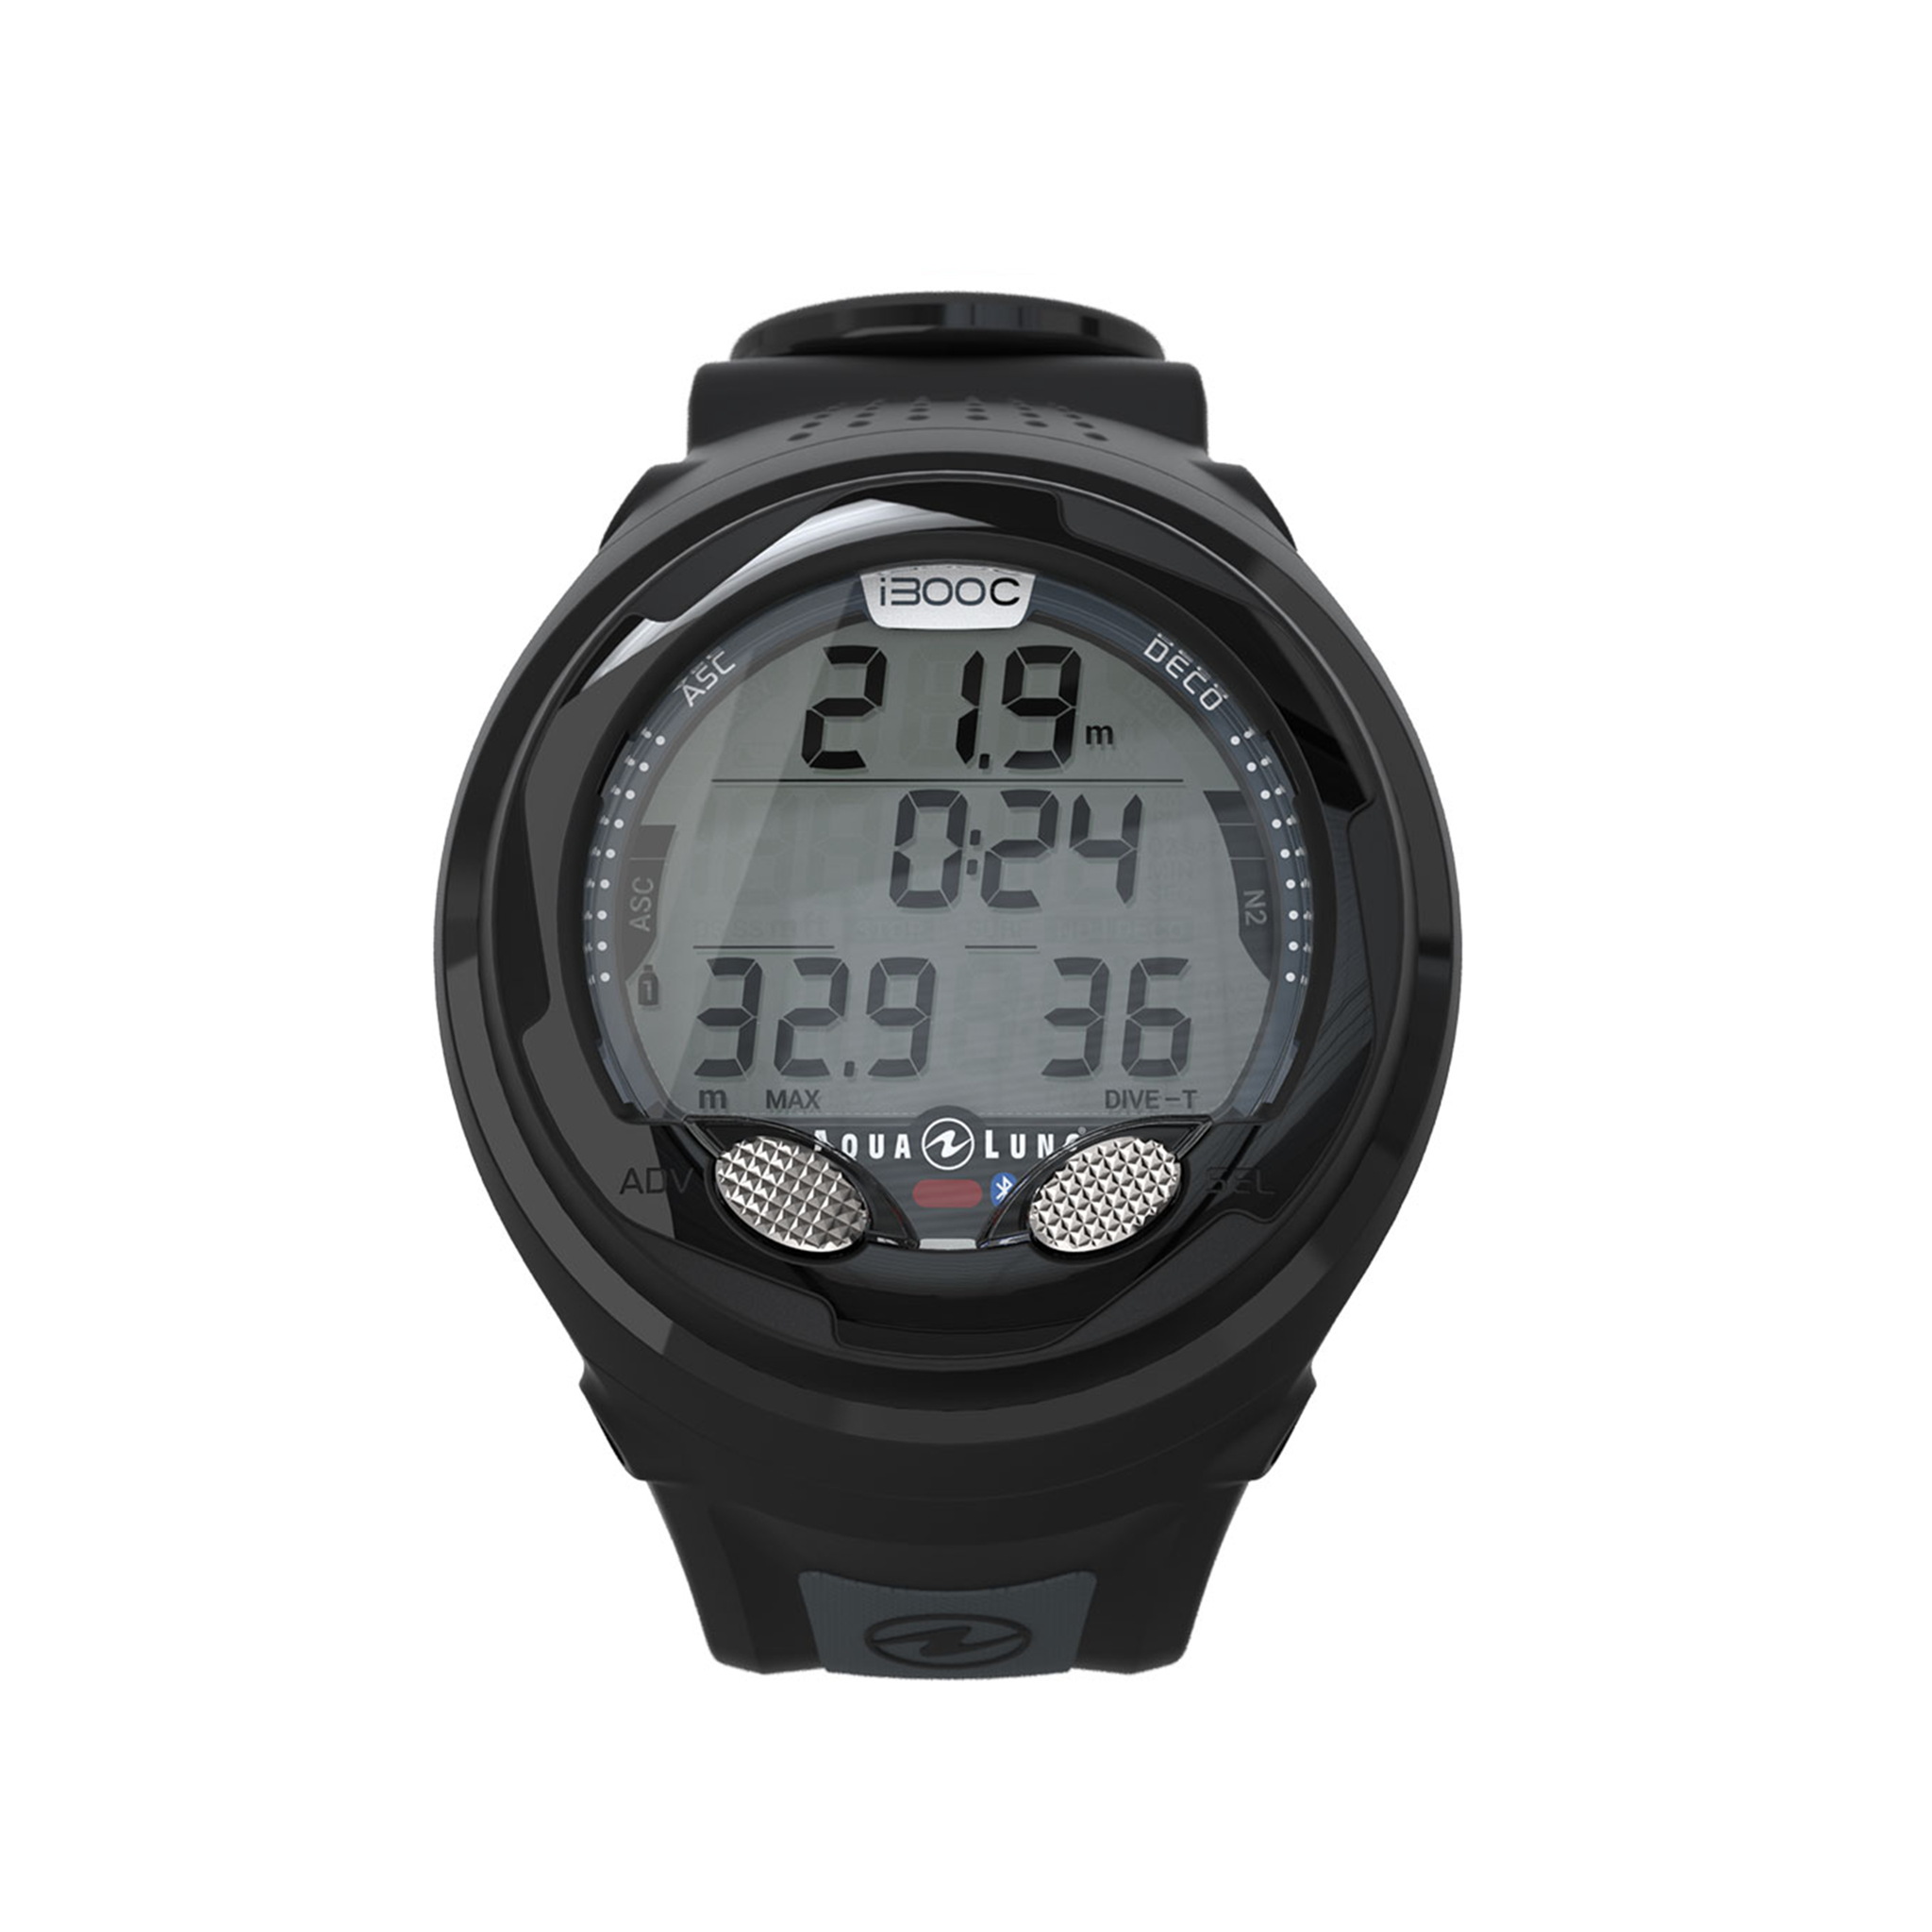  Đồng hồ lặn Aqualung i300C 